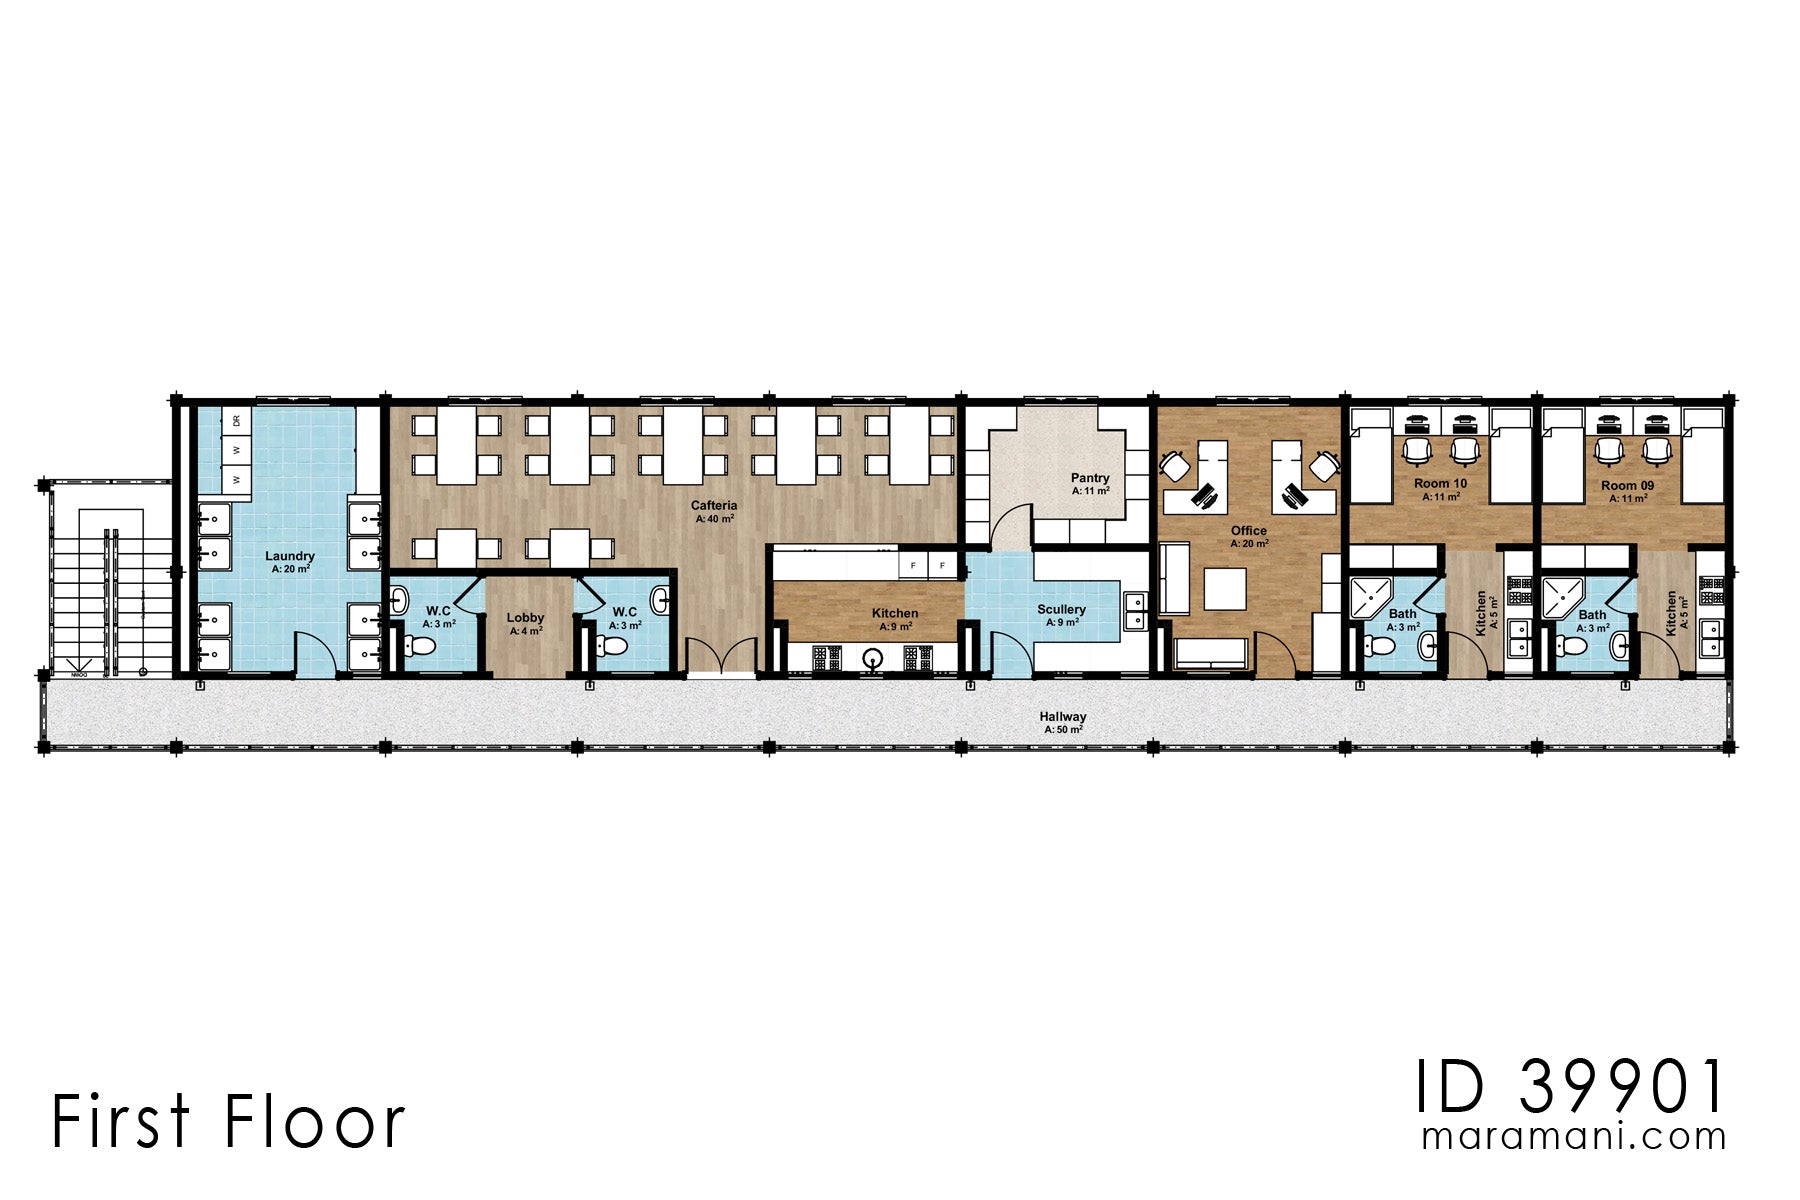 18 Bedroom Hostel Design - ID 39901